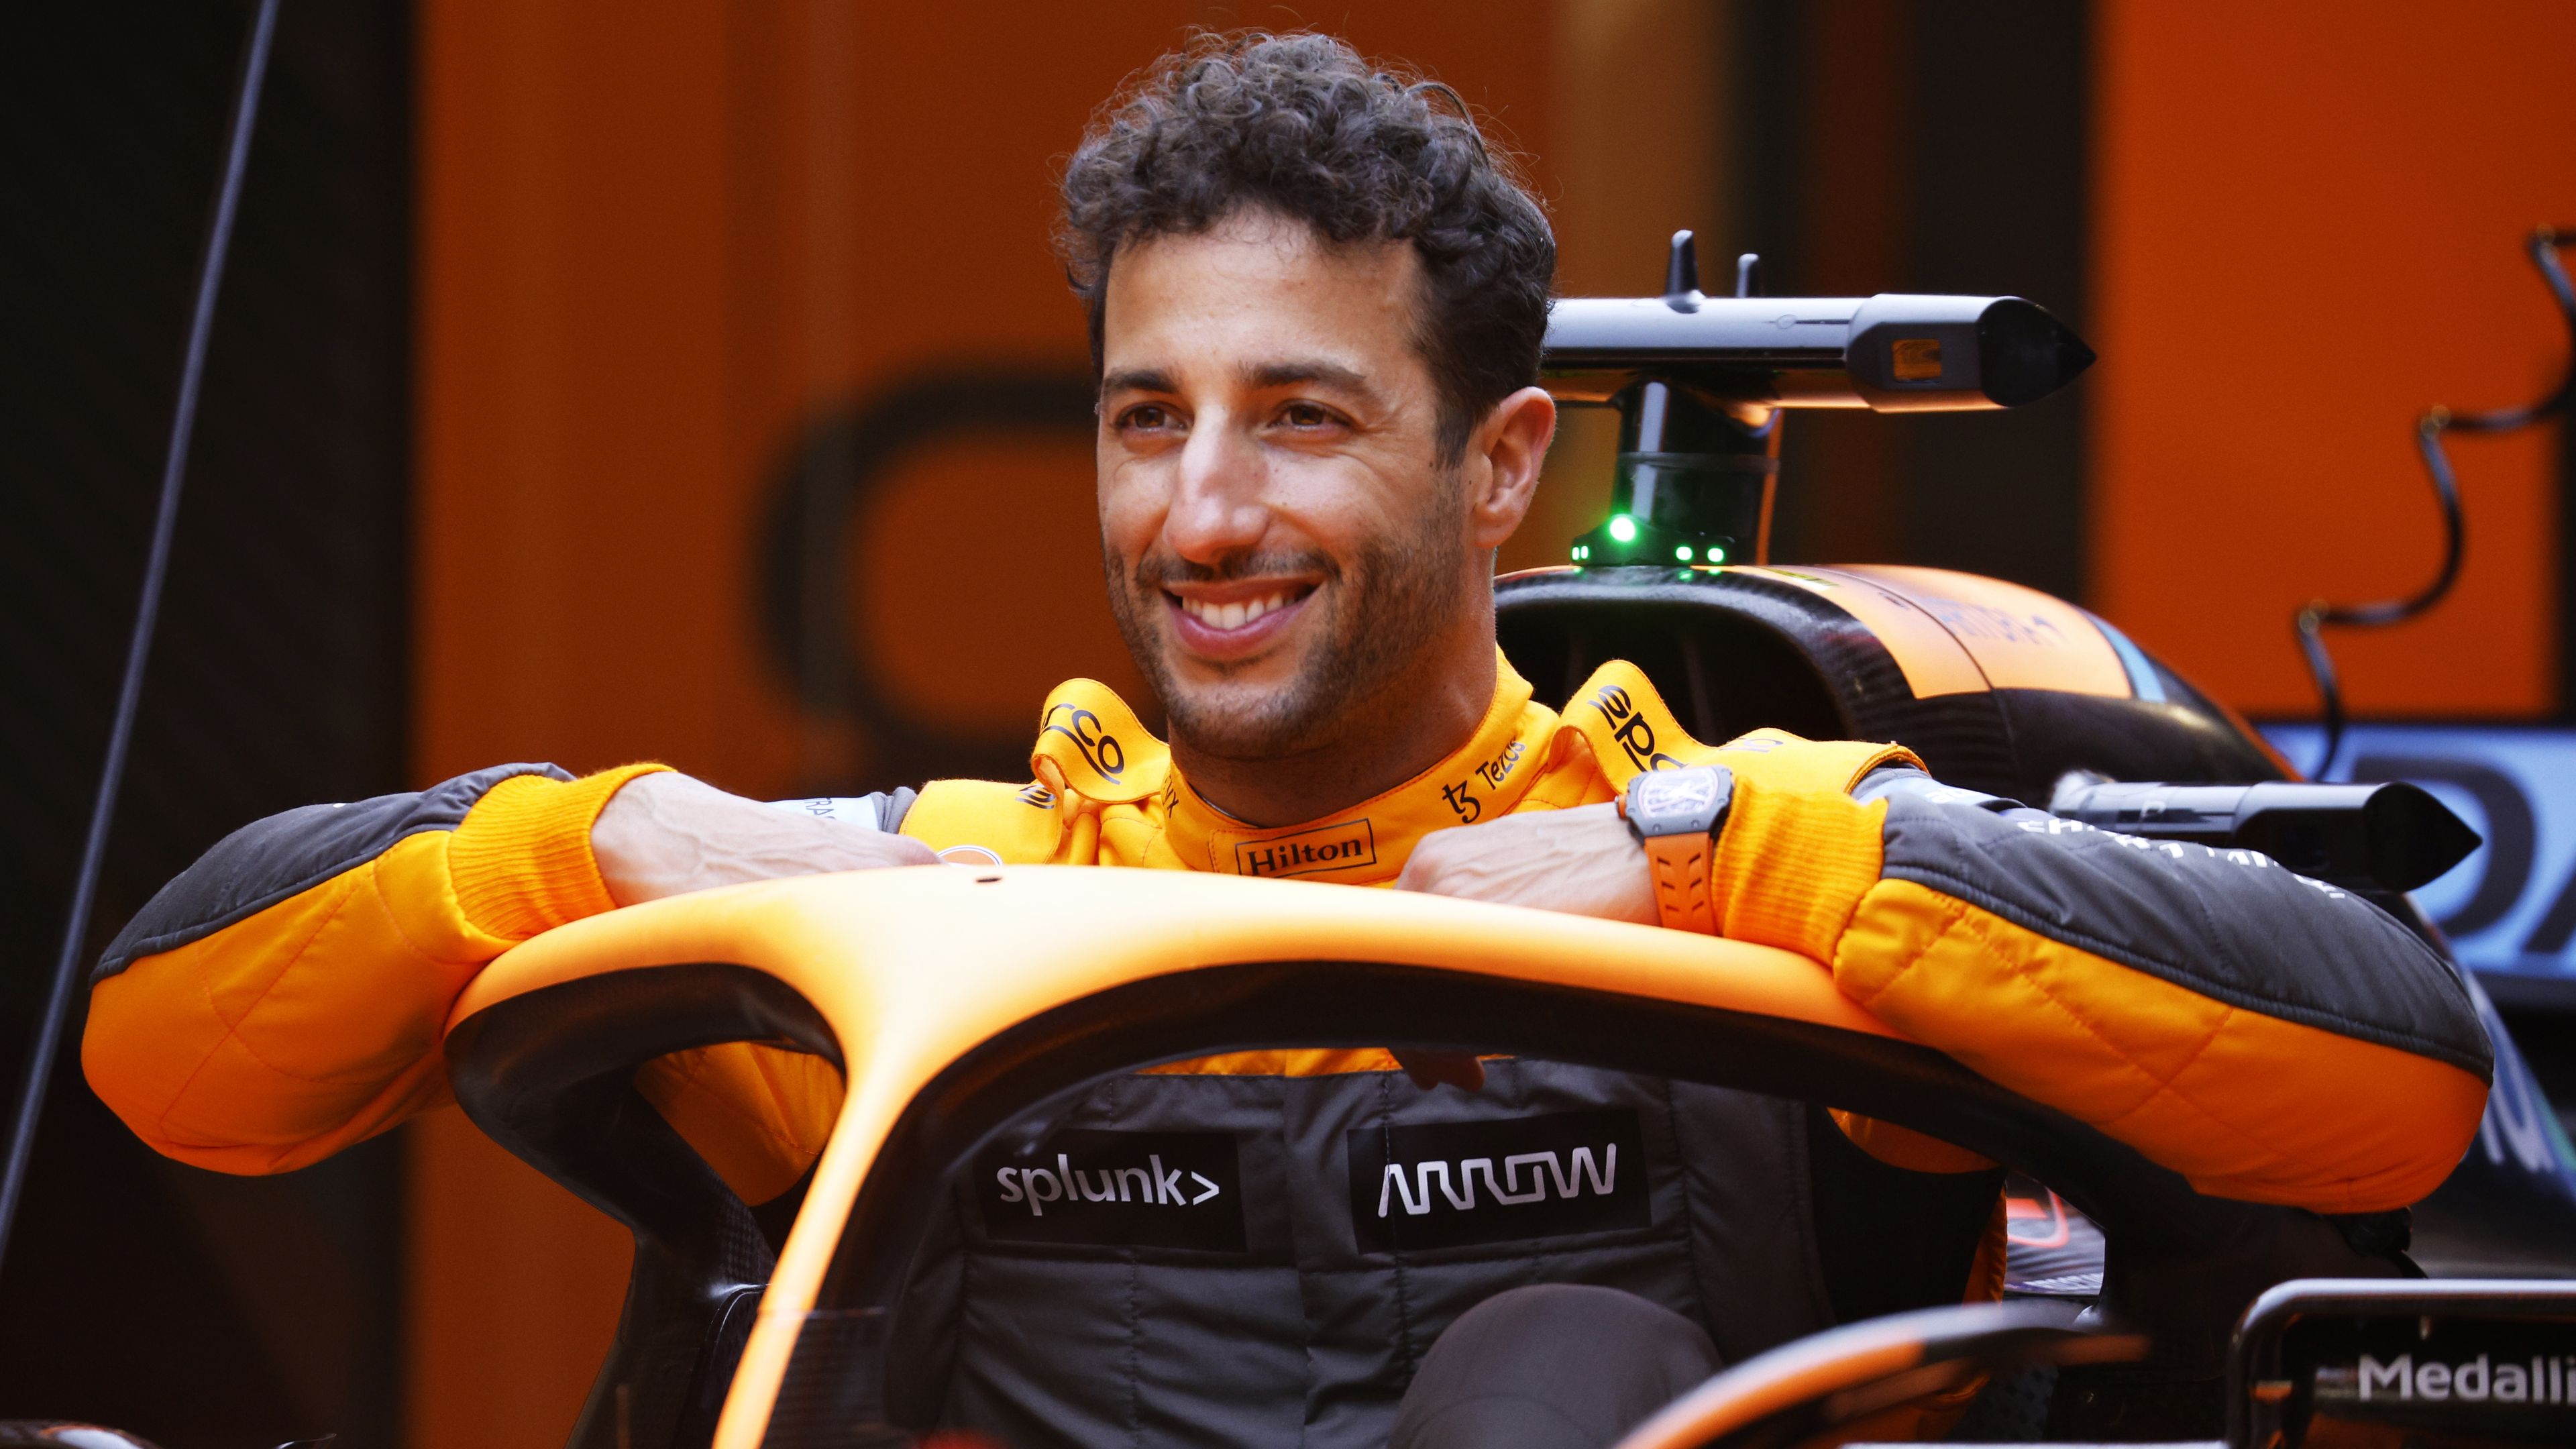 Daniel Ricciardo reveals he no longer feels 'bitter' following Red Bull split